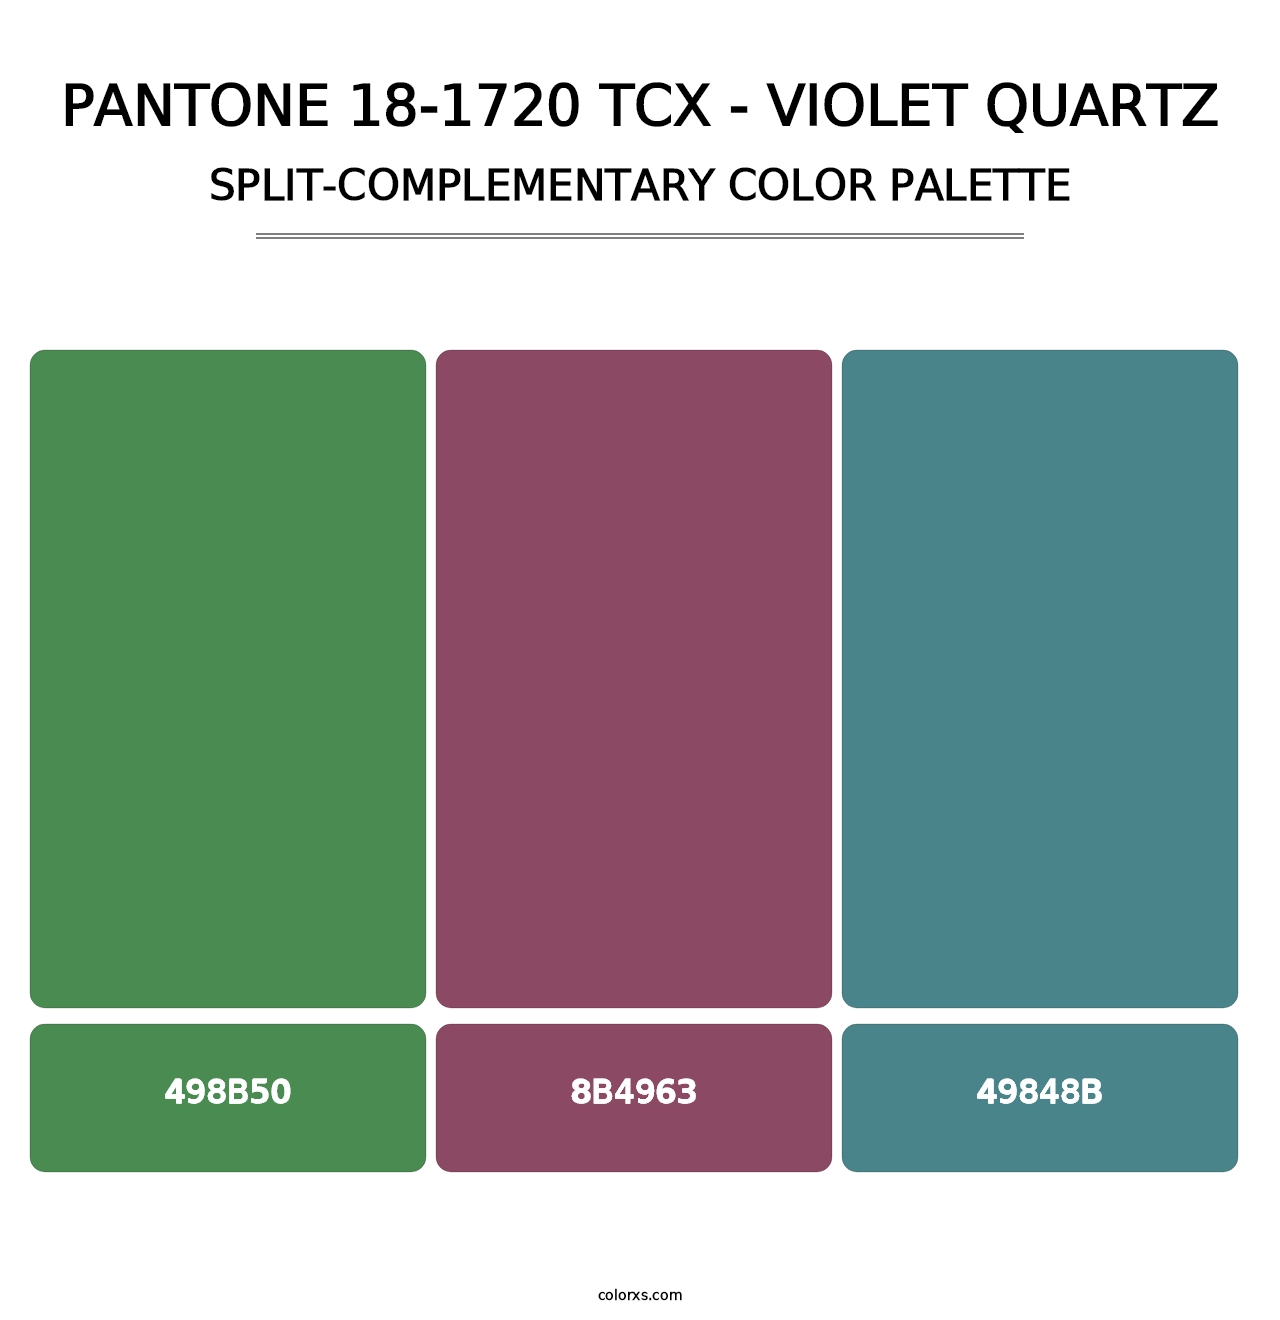 PANTONE 18-1720 TCX - Violet Quartz - Split-Complementary Color Palette